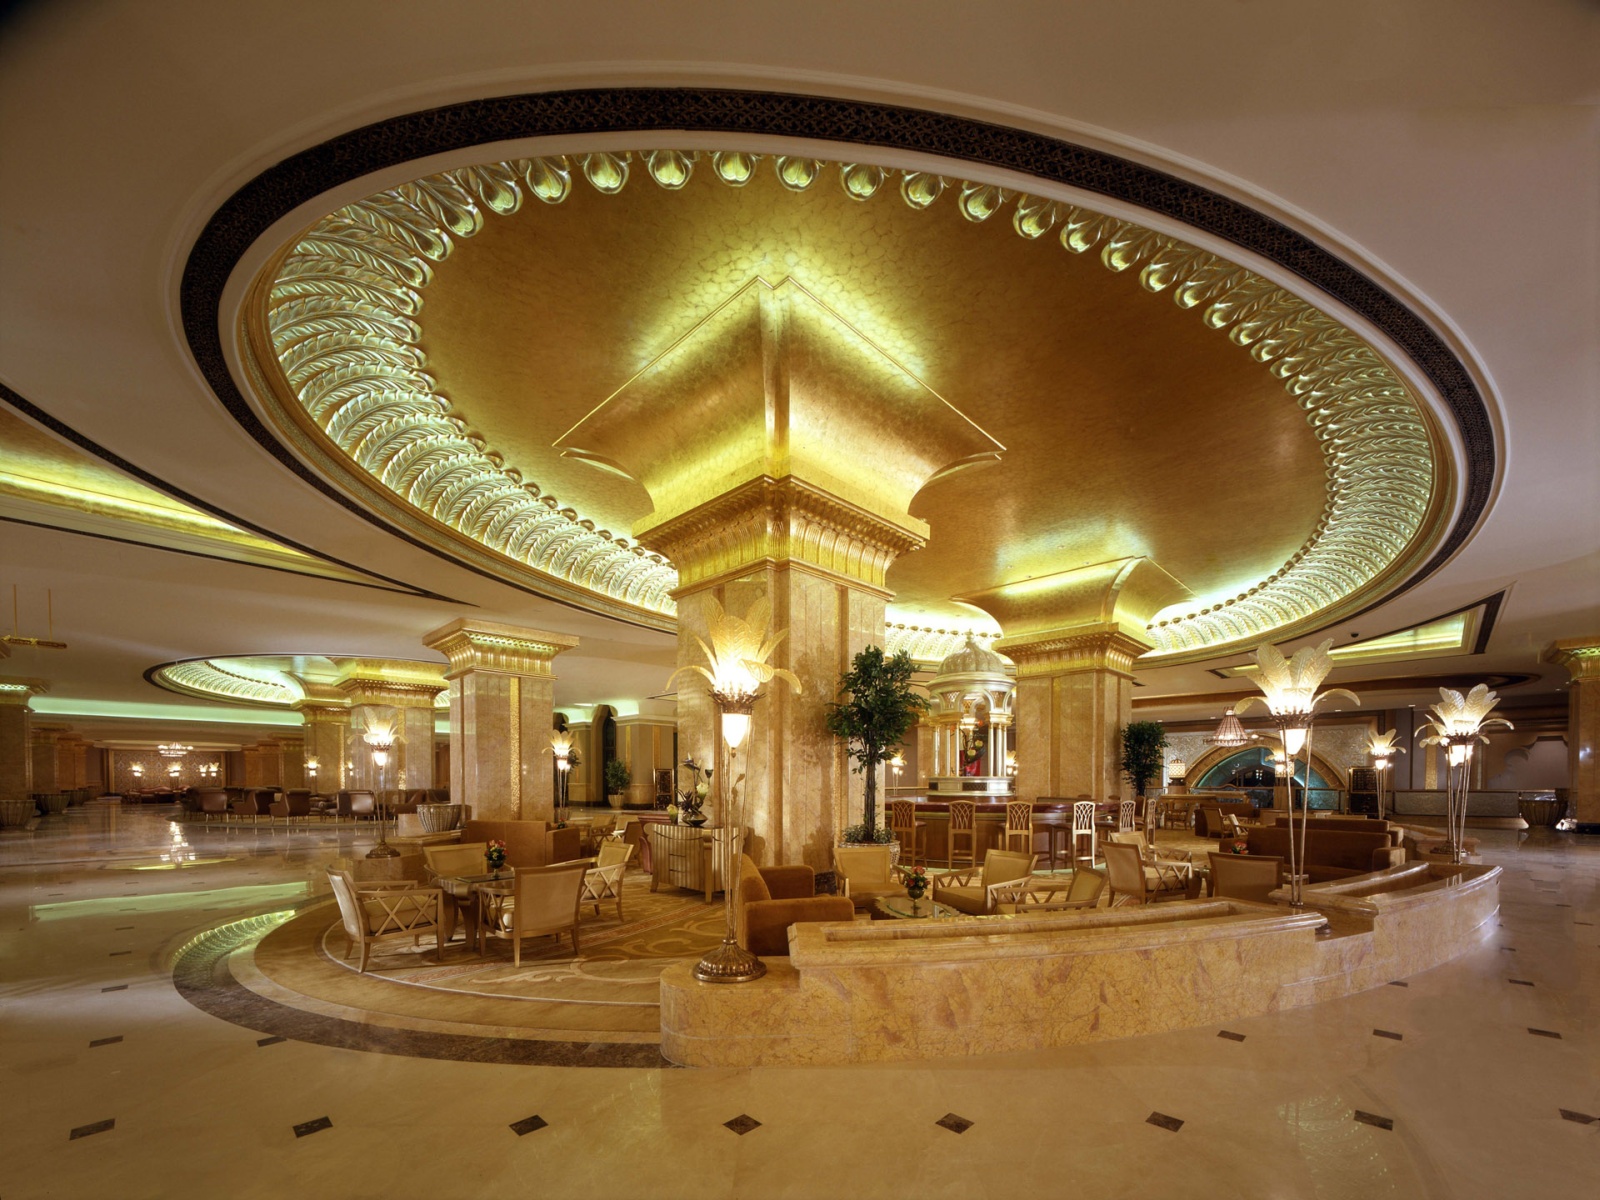 Emirates Palace - 7-Star Luxury In Abu Dhabi